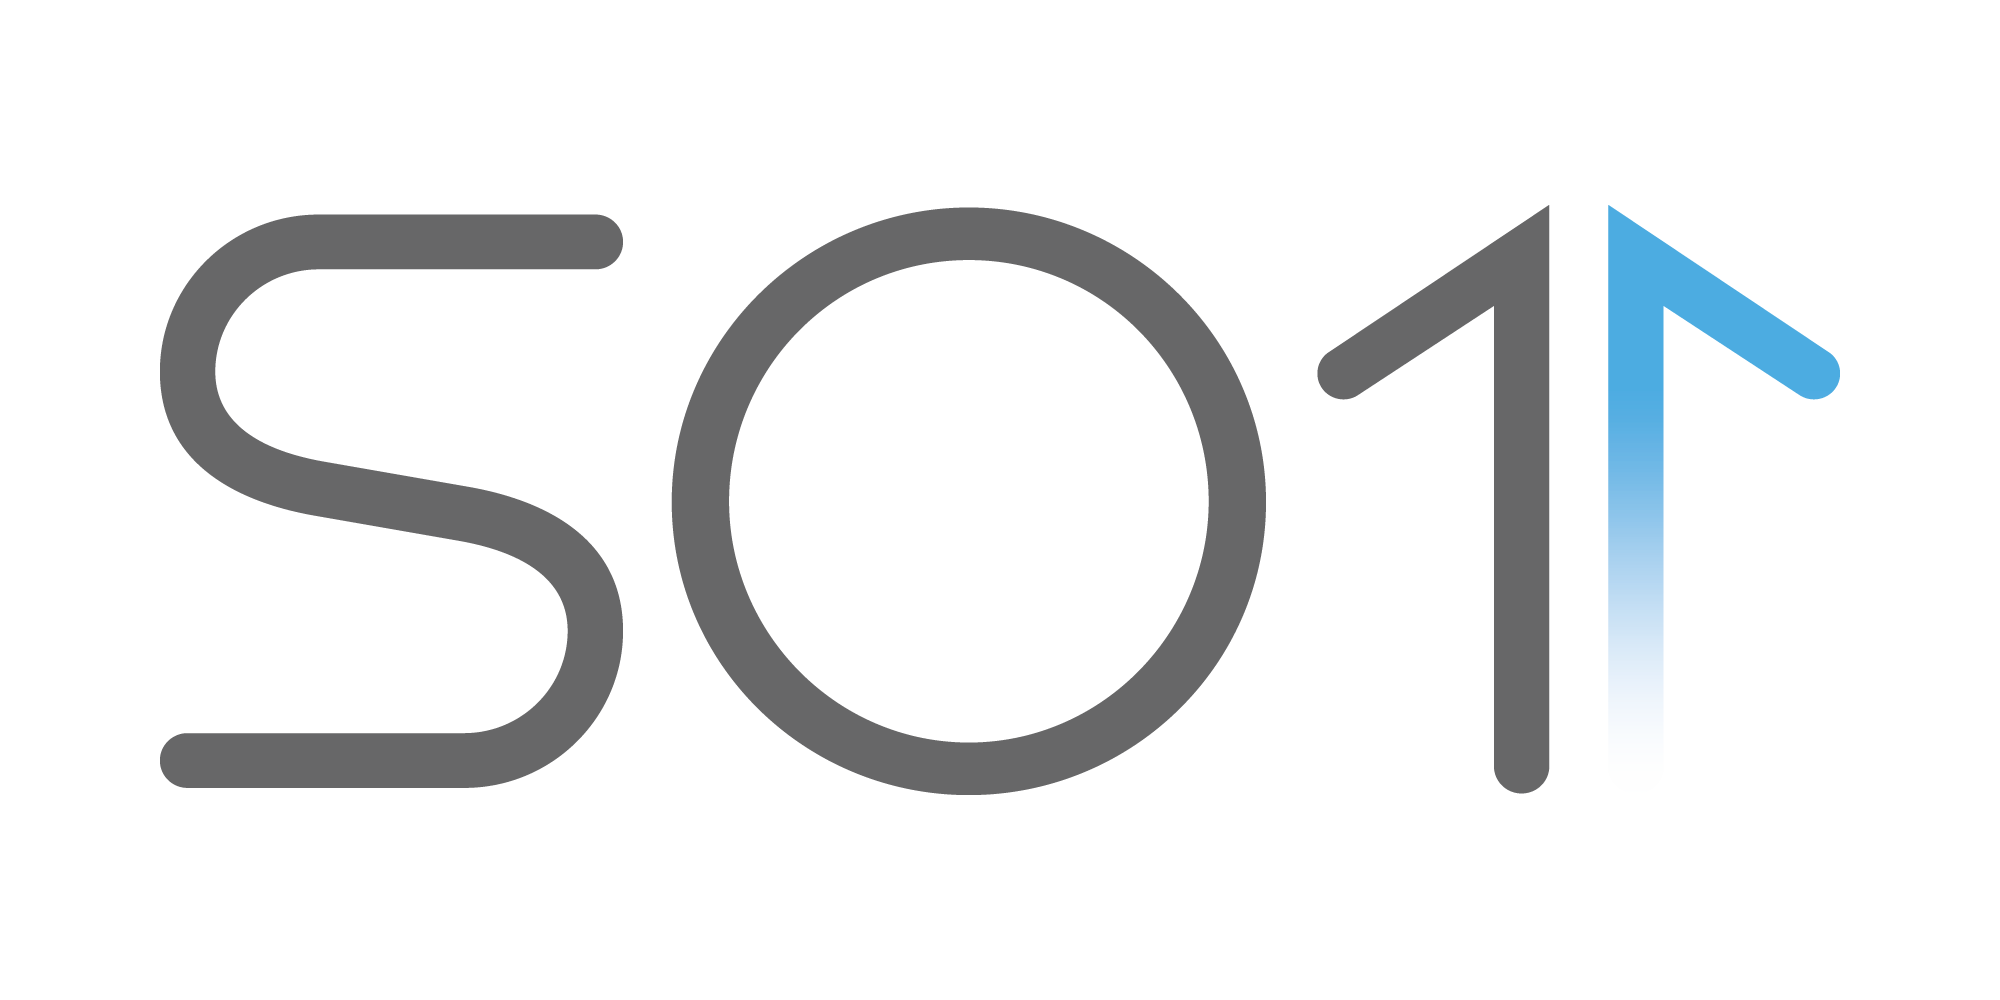 Логотип компании «SO1»